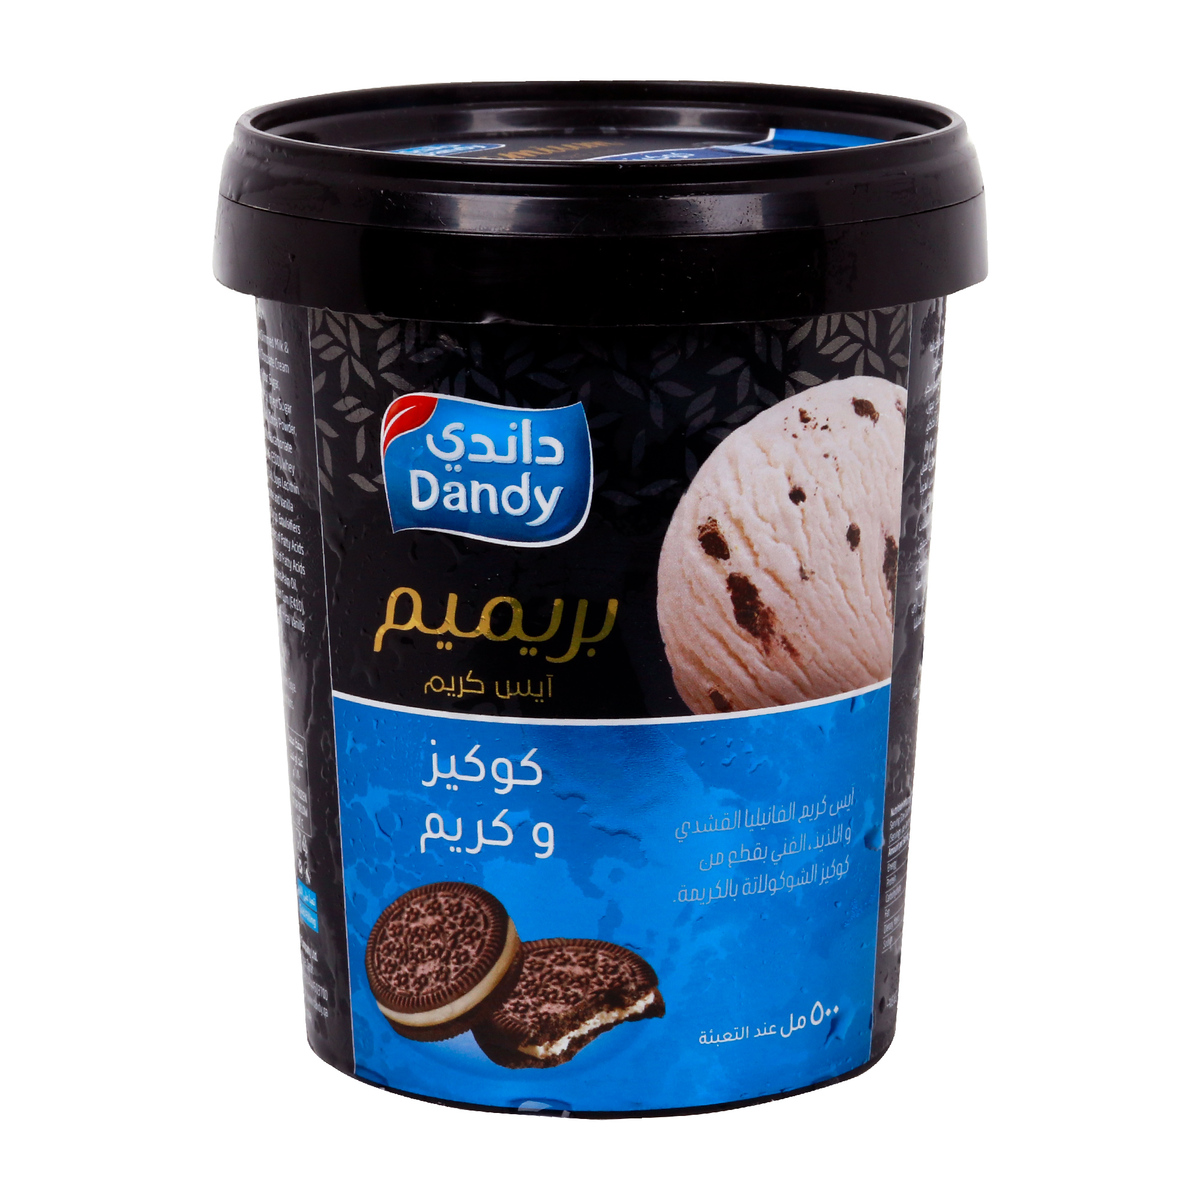 Dandy Premium Ice Cream Cookies & Cream 500ml